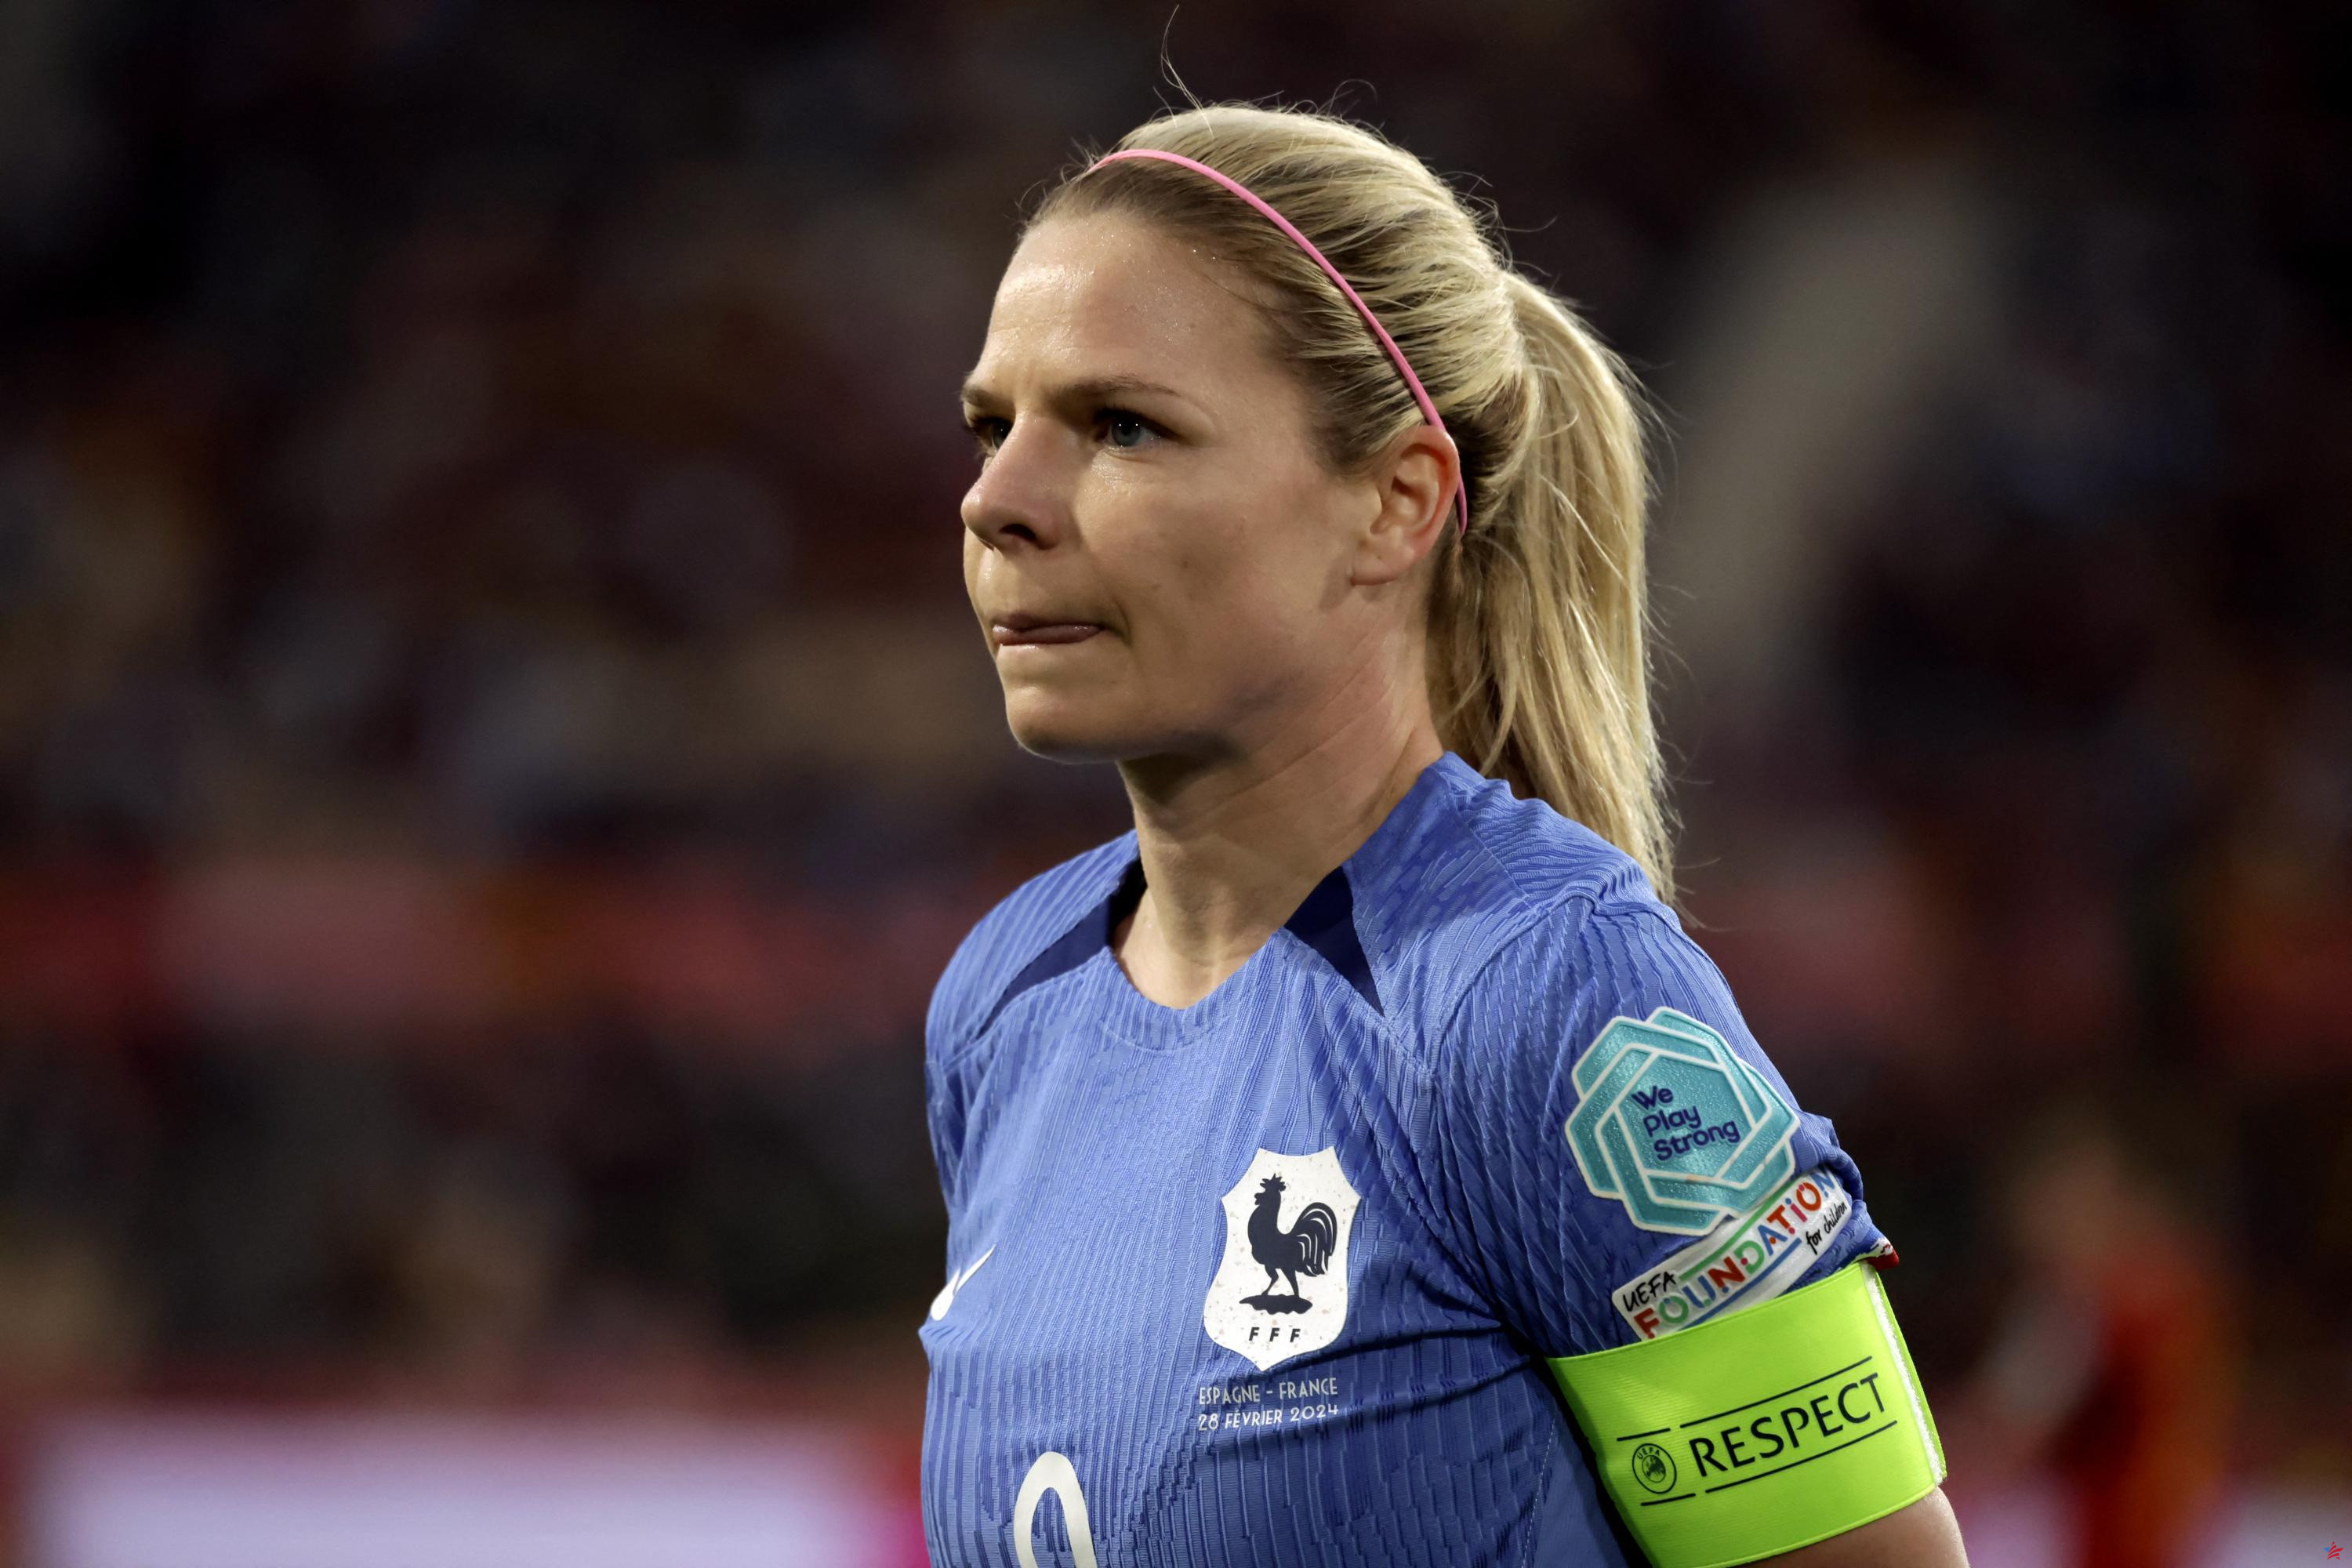 Clasificación femenina para la Eurocopa 2025: sorteo extremadamente difícil para las Blues